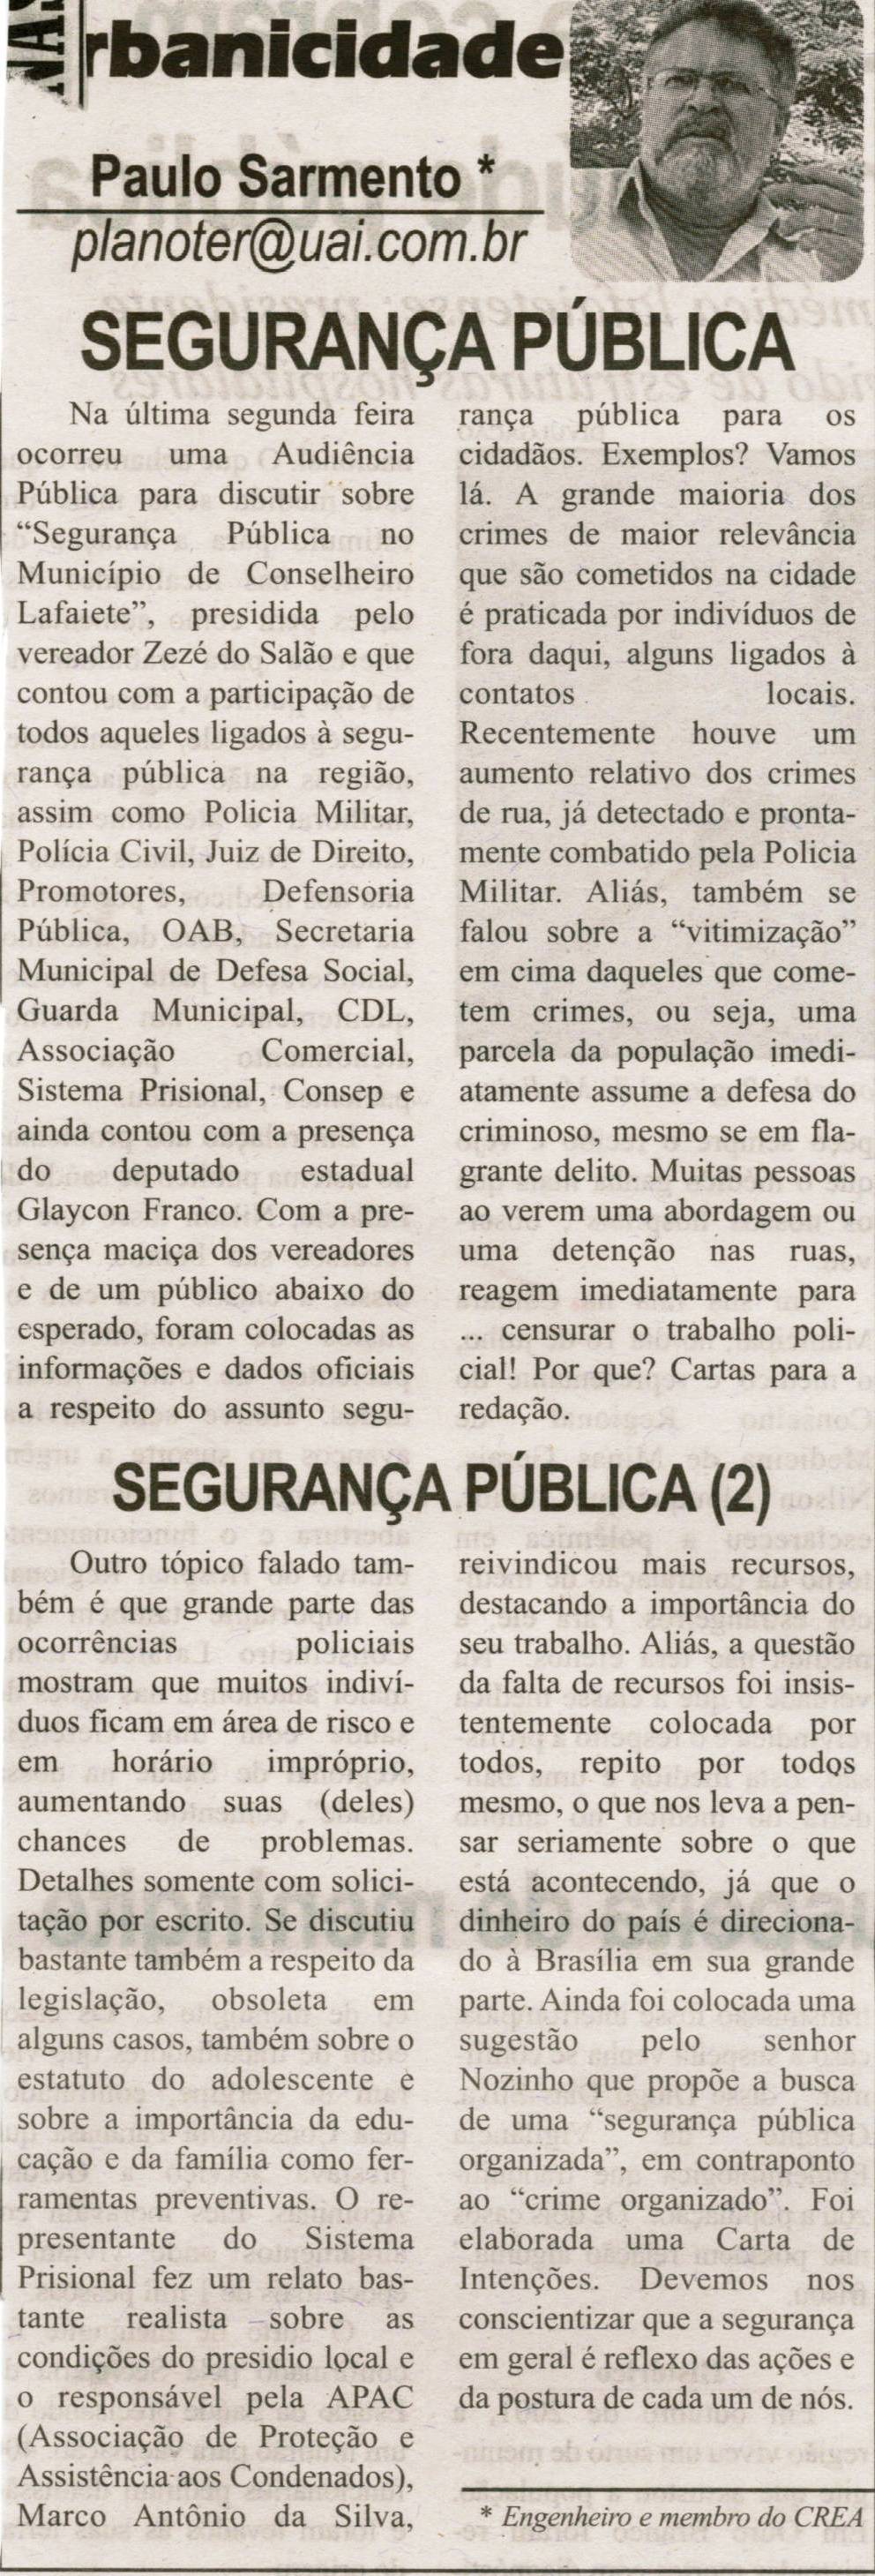 SARMENTO, Paulo. Segurança Pública;  Segurança Pública (2). Correio de Minas, Conselheiro Lafaiete, 31 ago. 2013, p. 04.